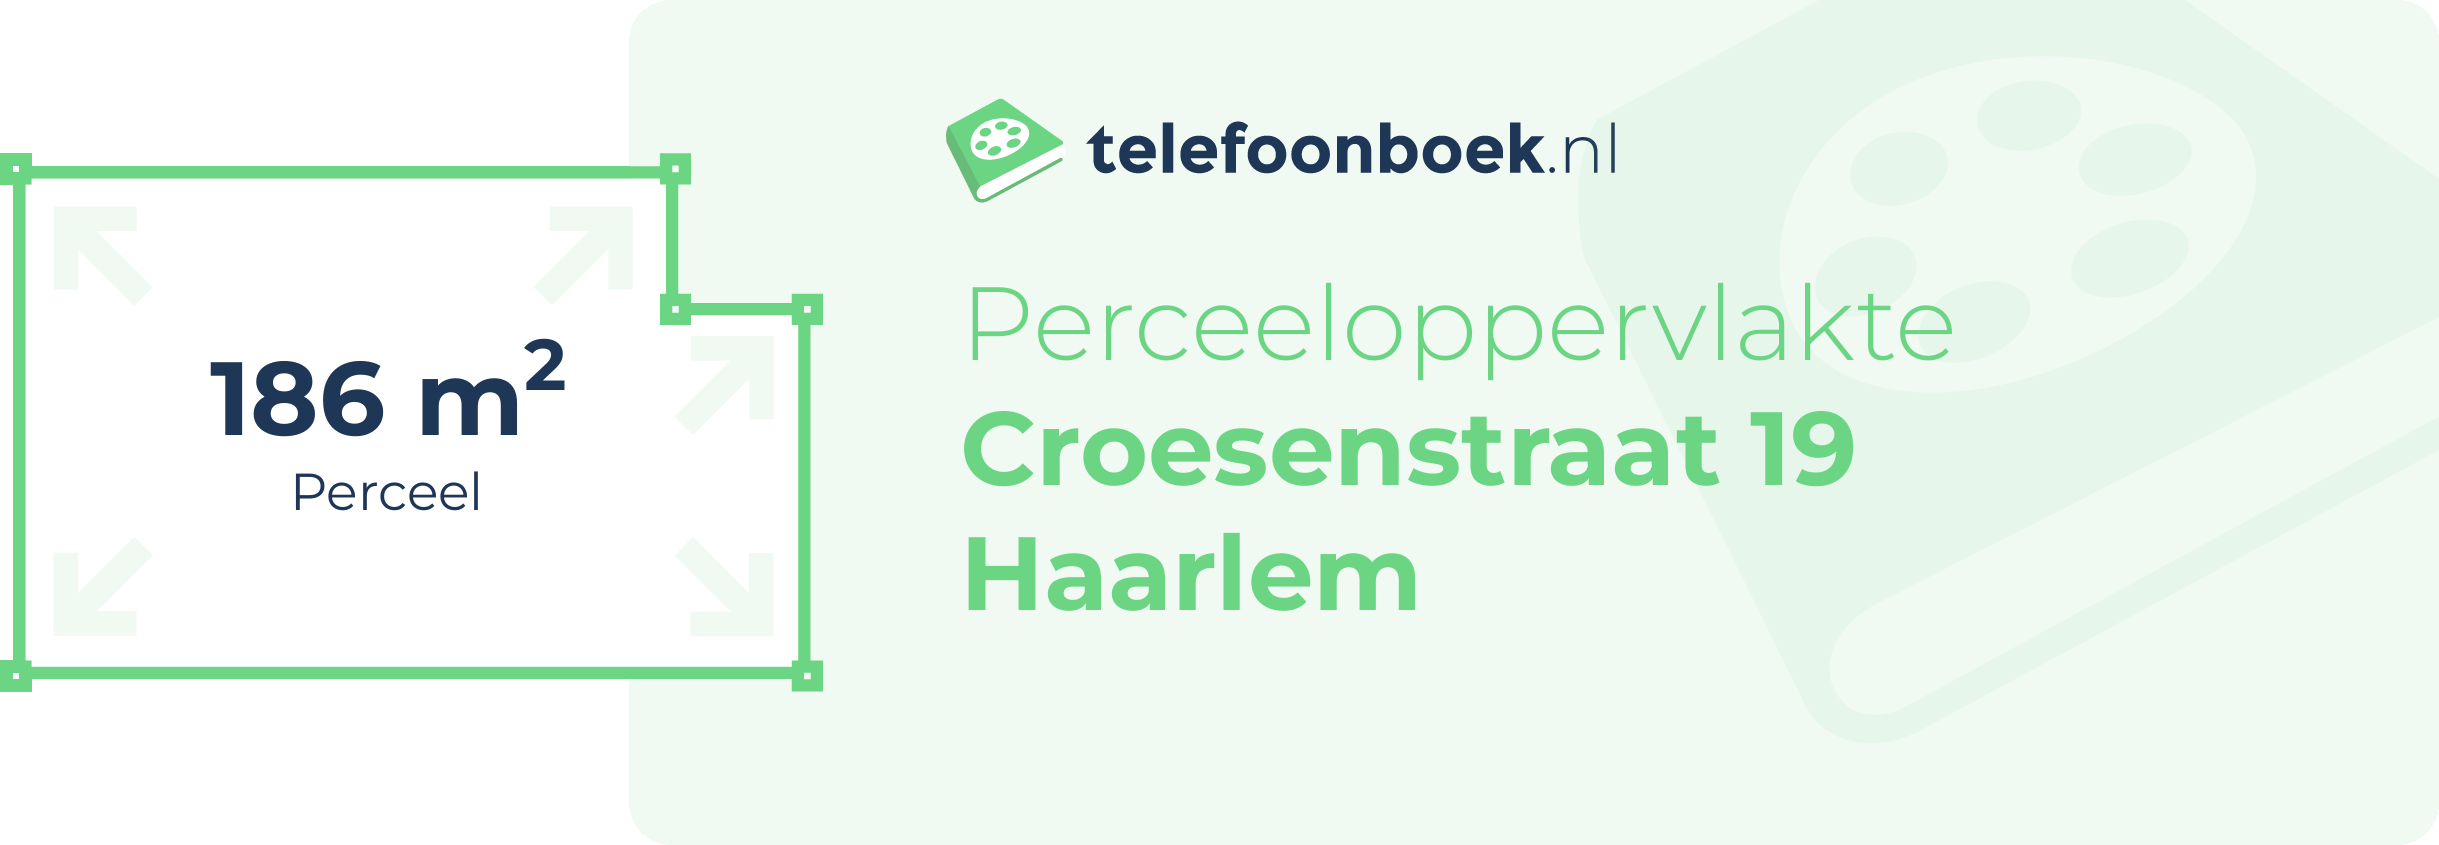 Perceeloppervlakte Croesenstraat 19 Haarlem